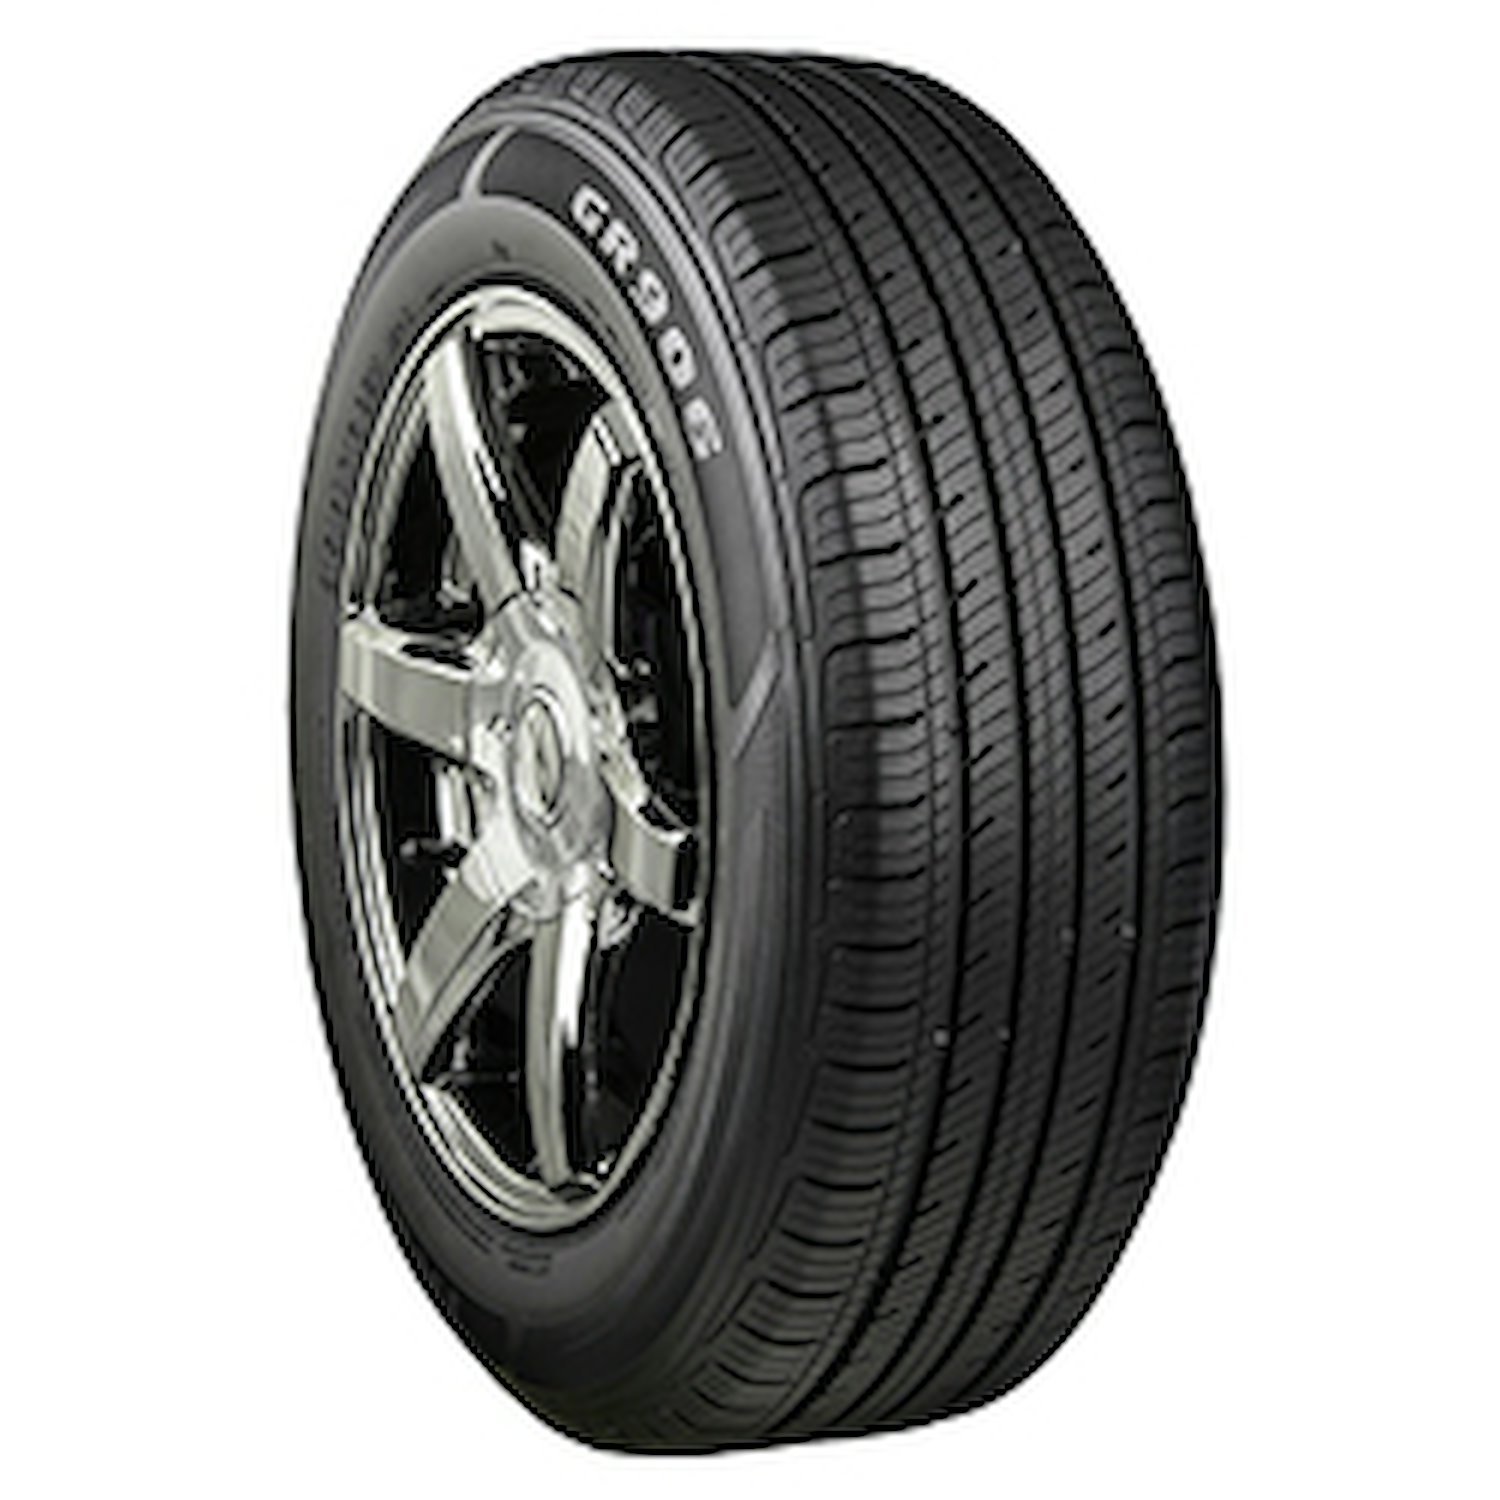 GR906 Tire, 215/60R16 95H